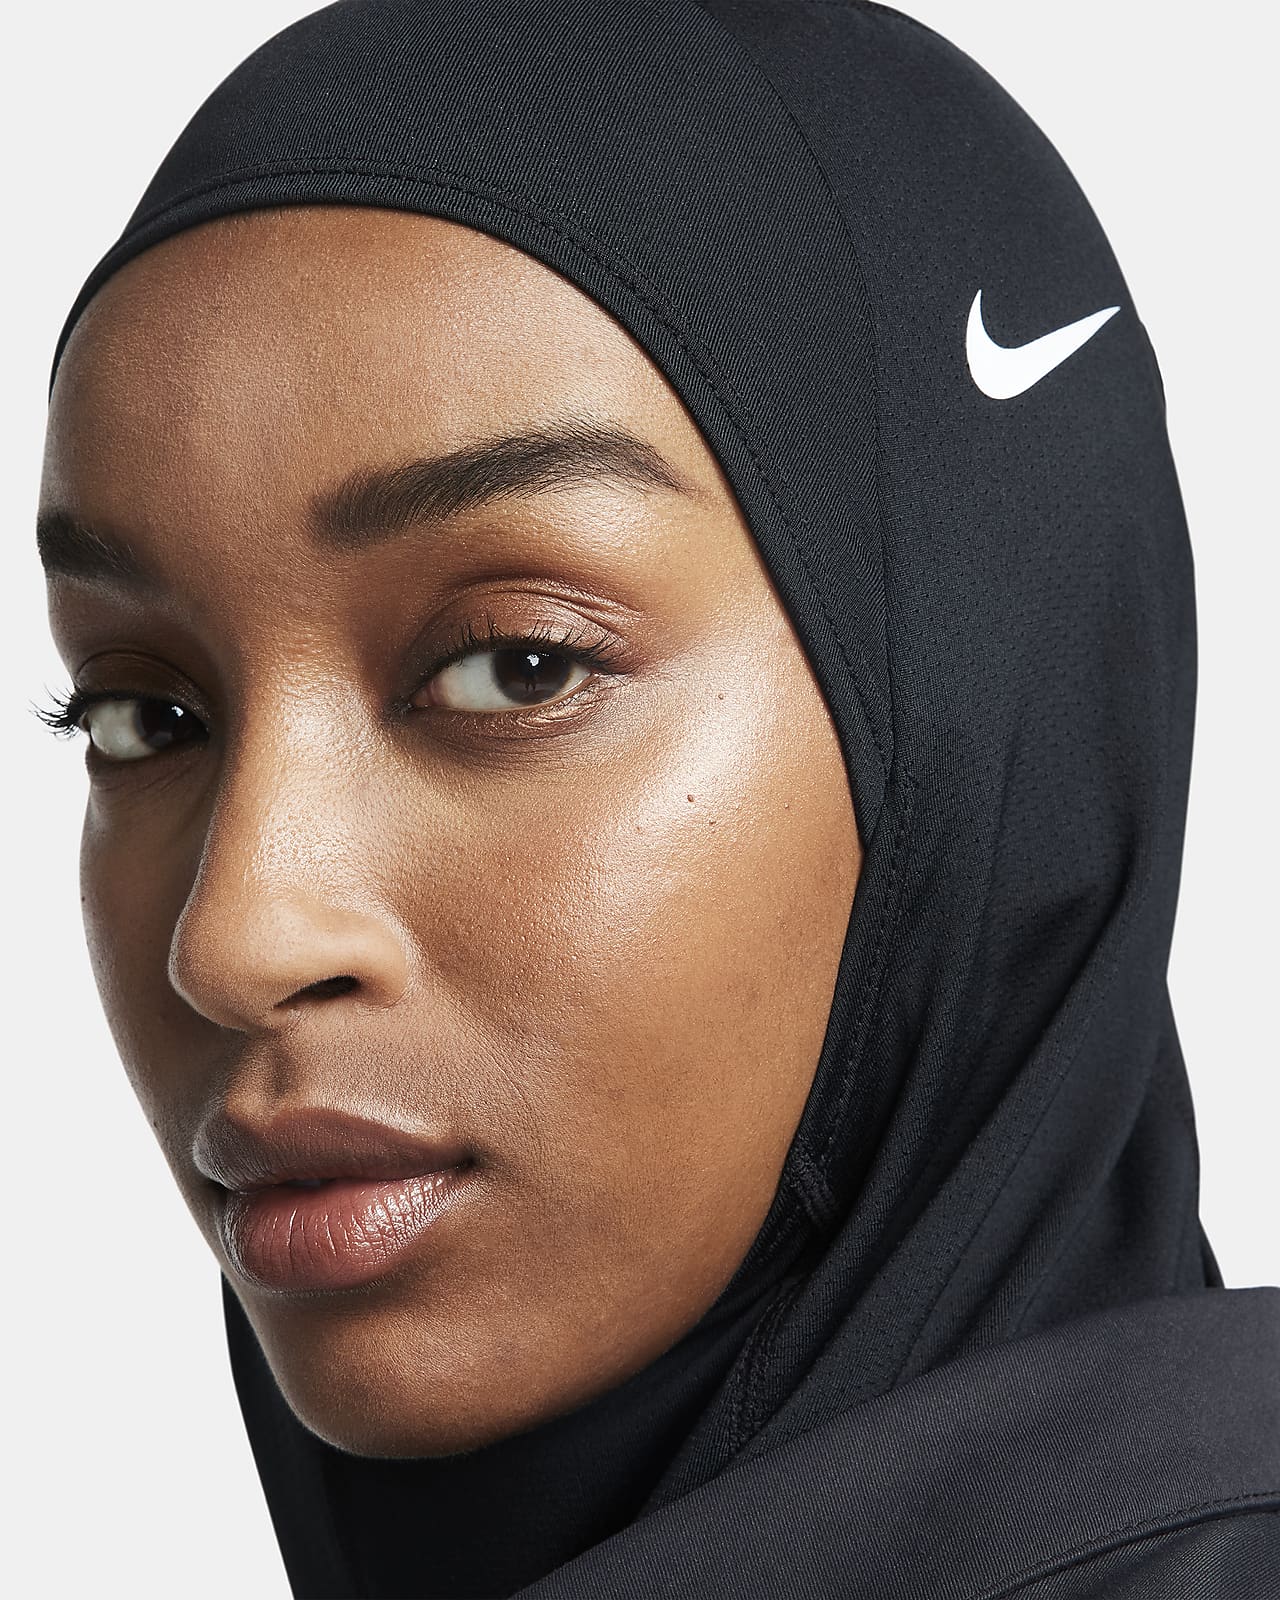 Nike Pro Hijab.